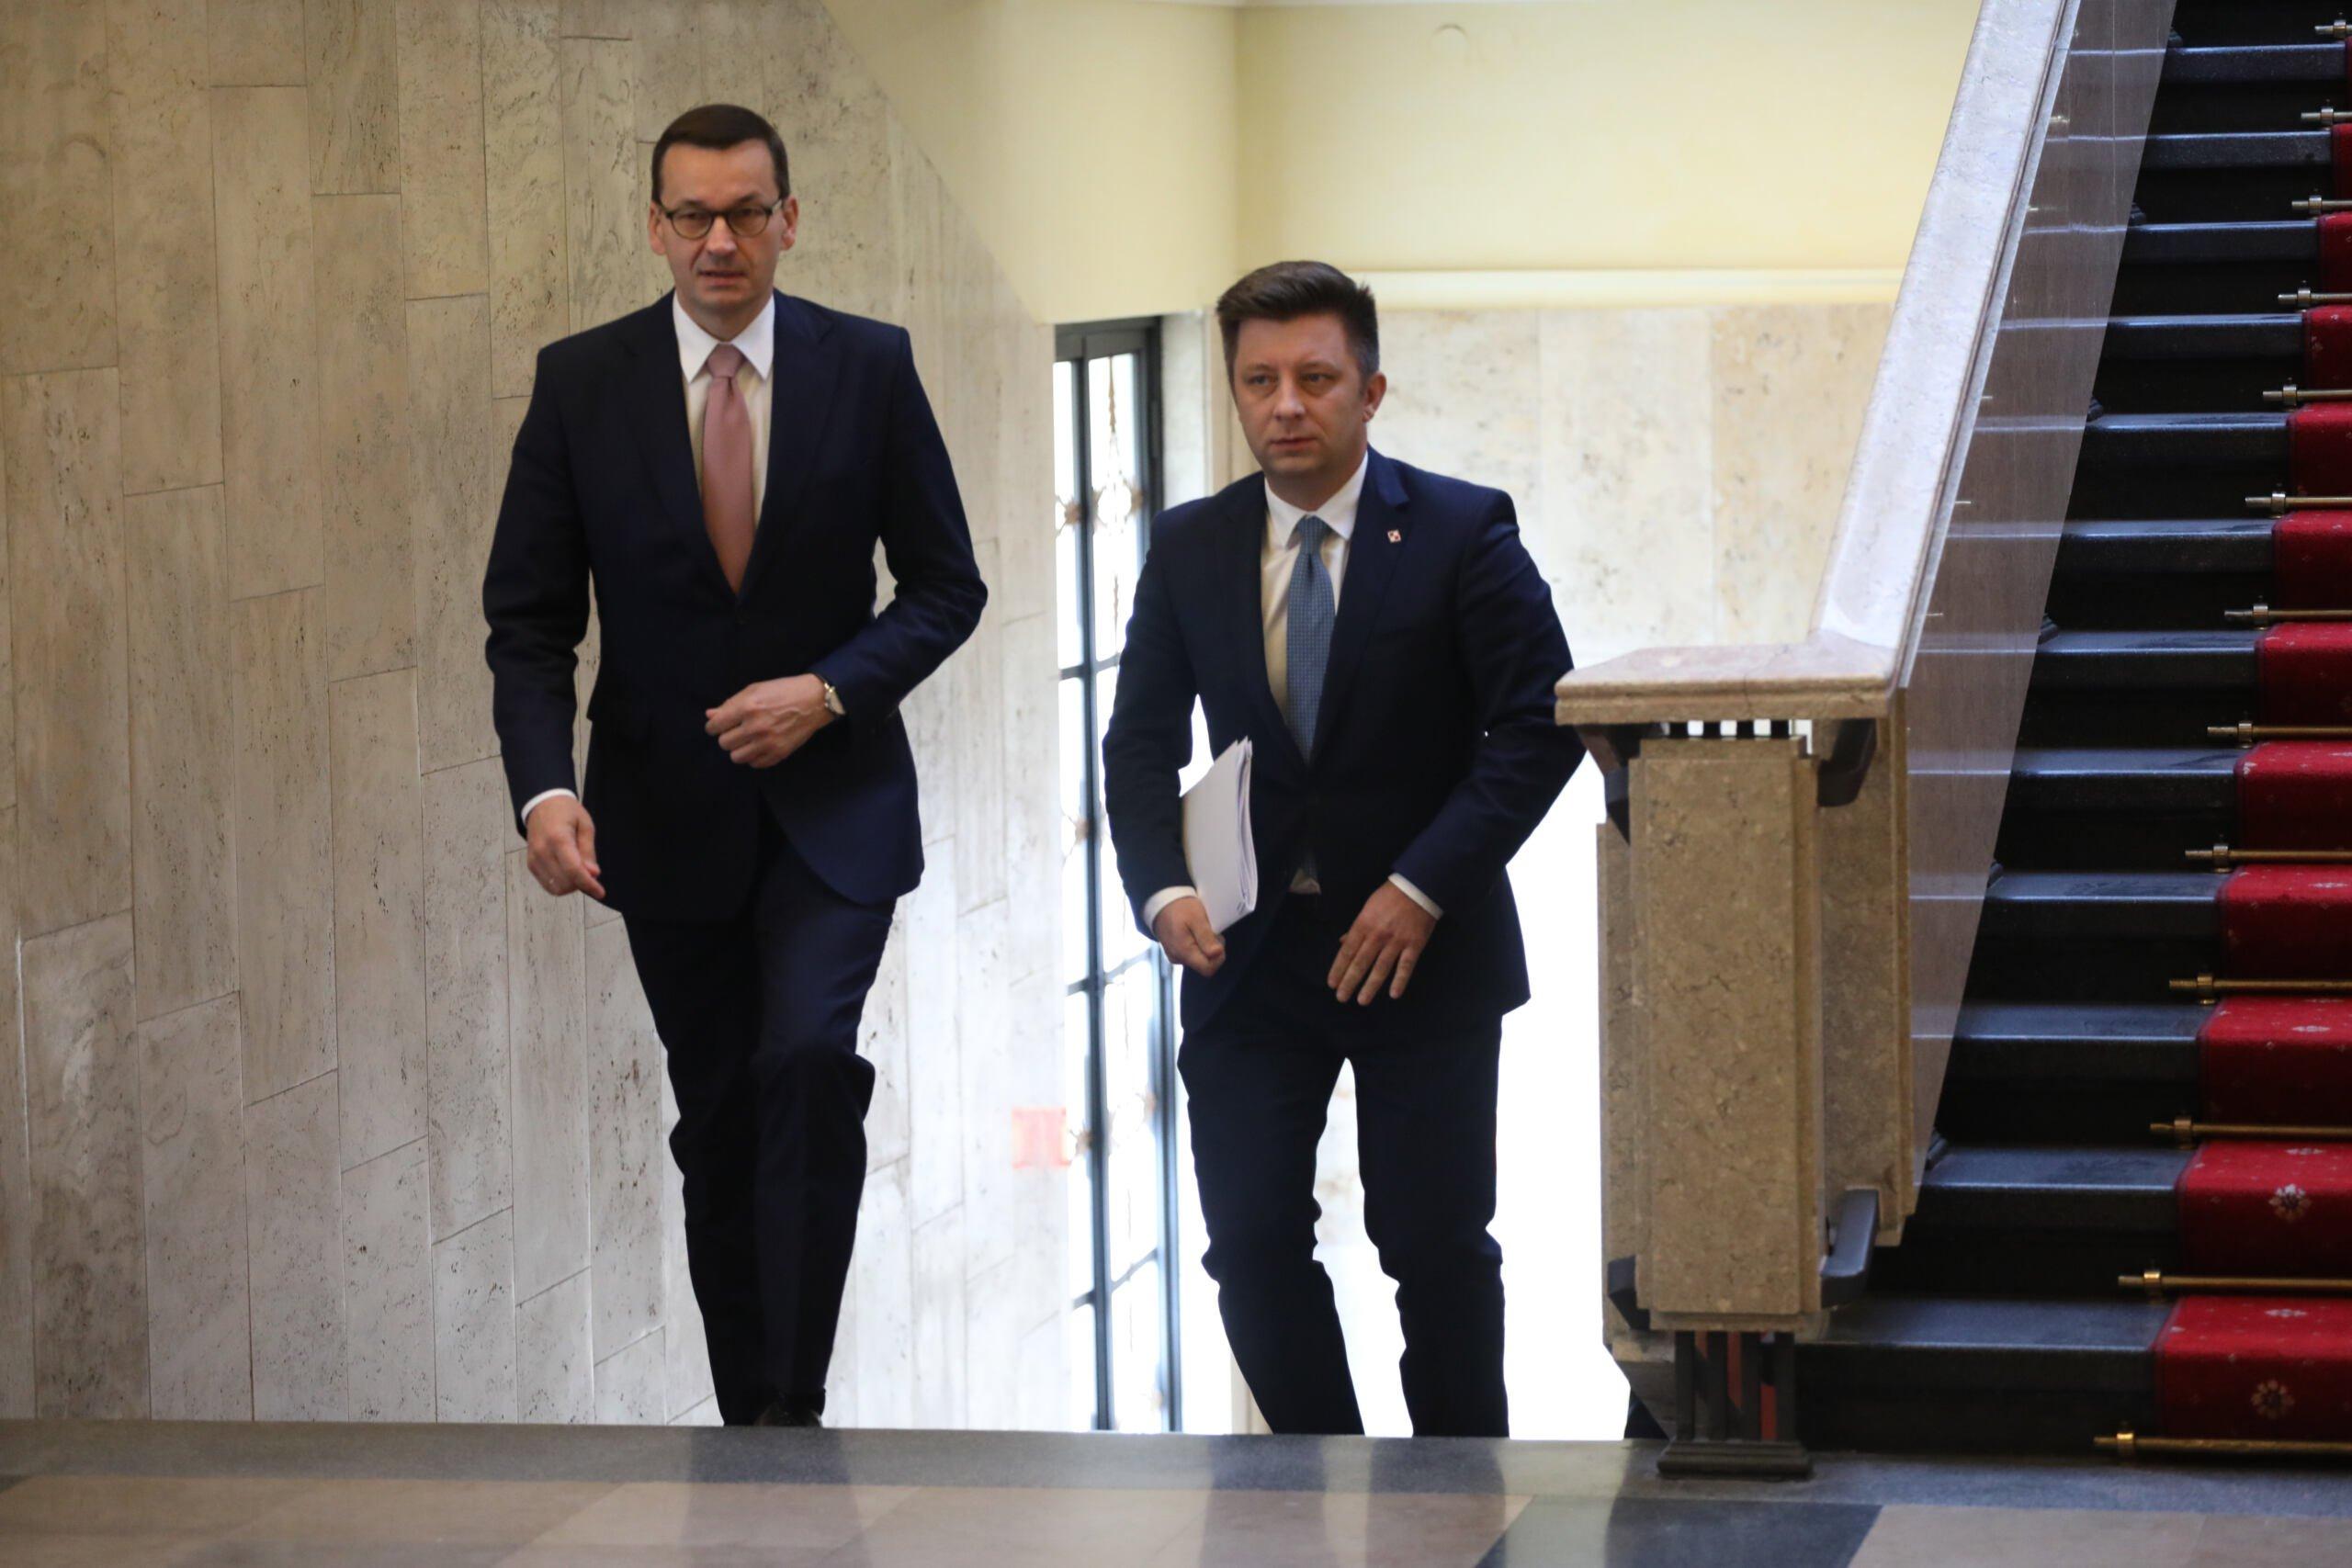 Afera mailowa, Michał Dworczyk i Mateusz Morawiecki wchodza po schodach w budynku Kancelarii Premiera